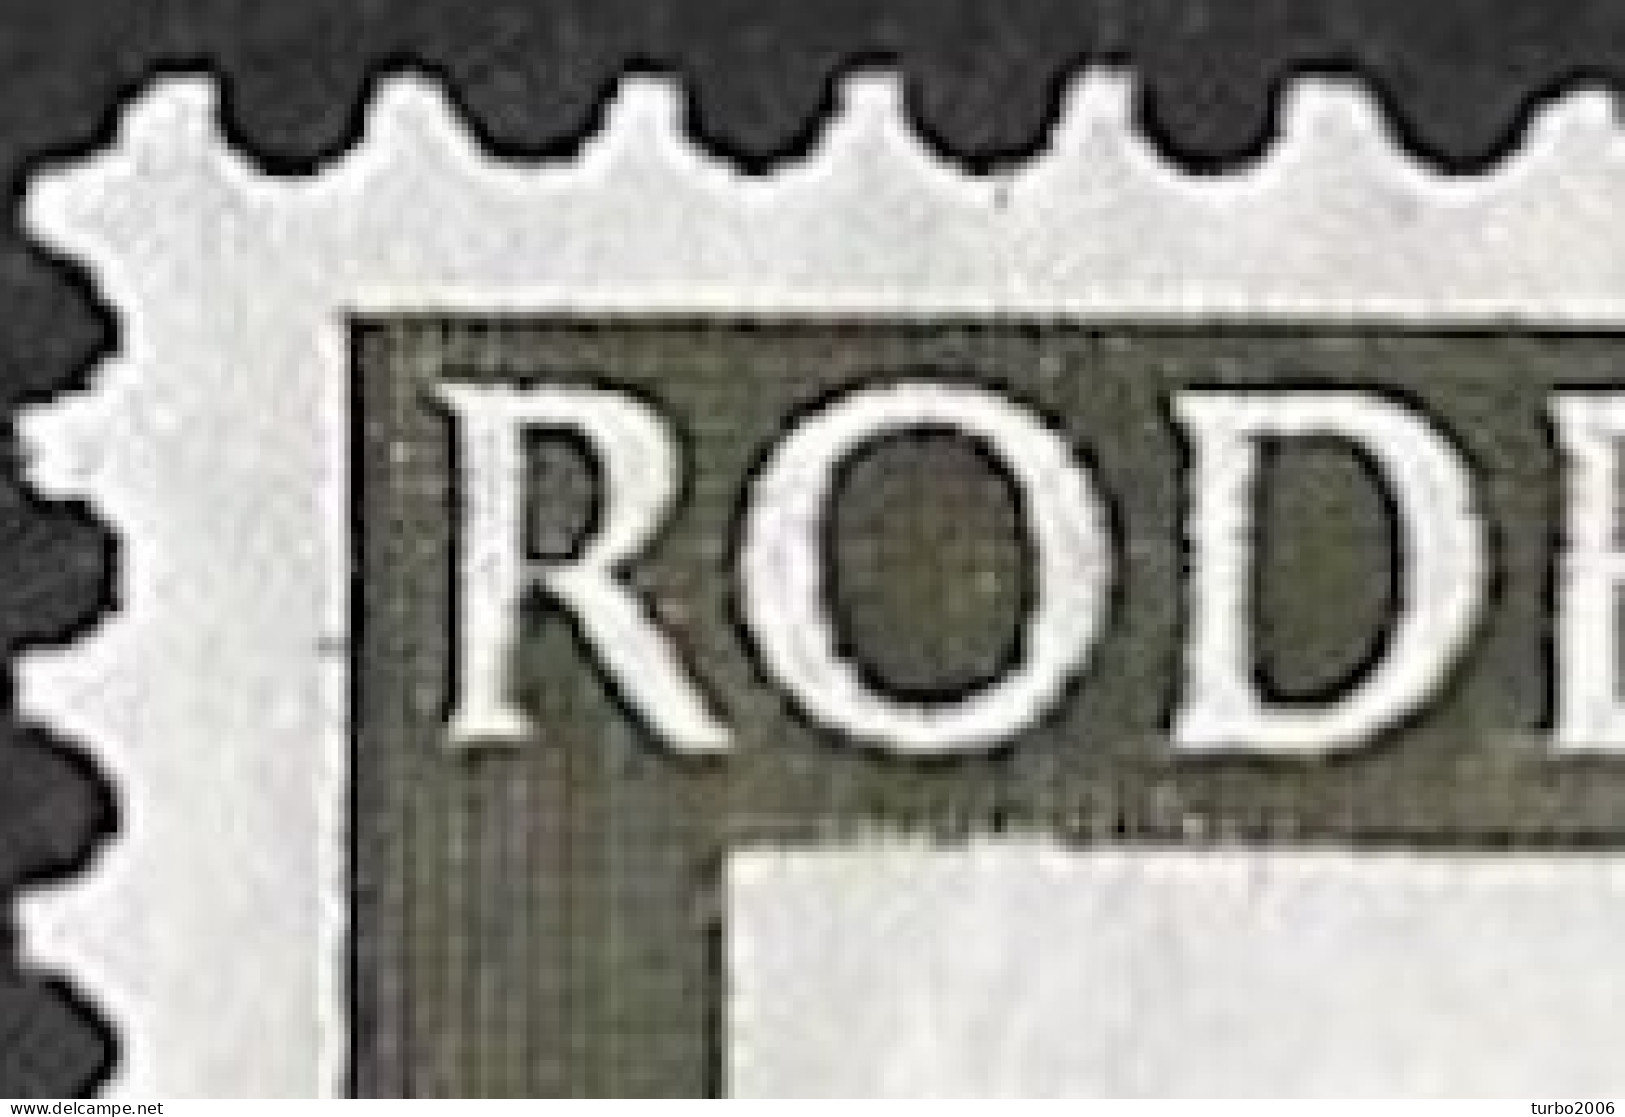 Plaatfout Inham In De Witte Rand Onder De O Van ROde In 1953 Rode Kruis Zegels 2 +3 Ct NVPH 607 PM 2 Ongestempeld - Variétés Et Curiosités